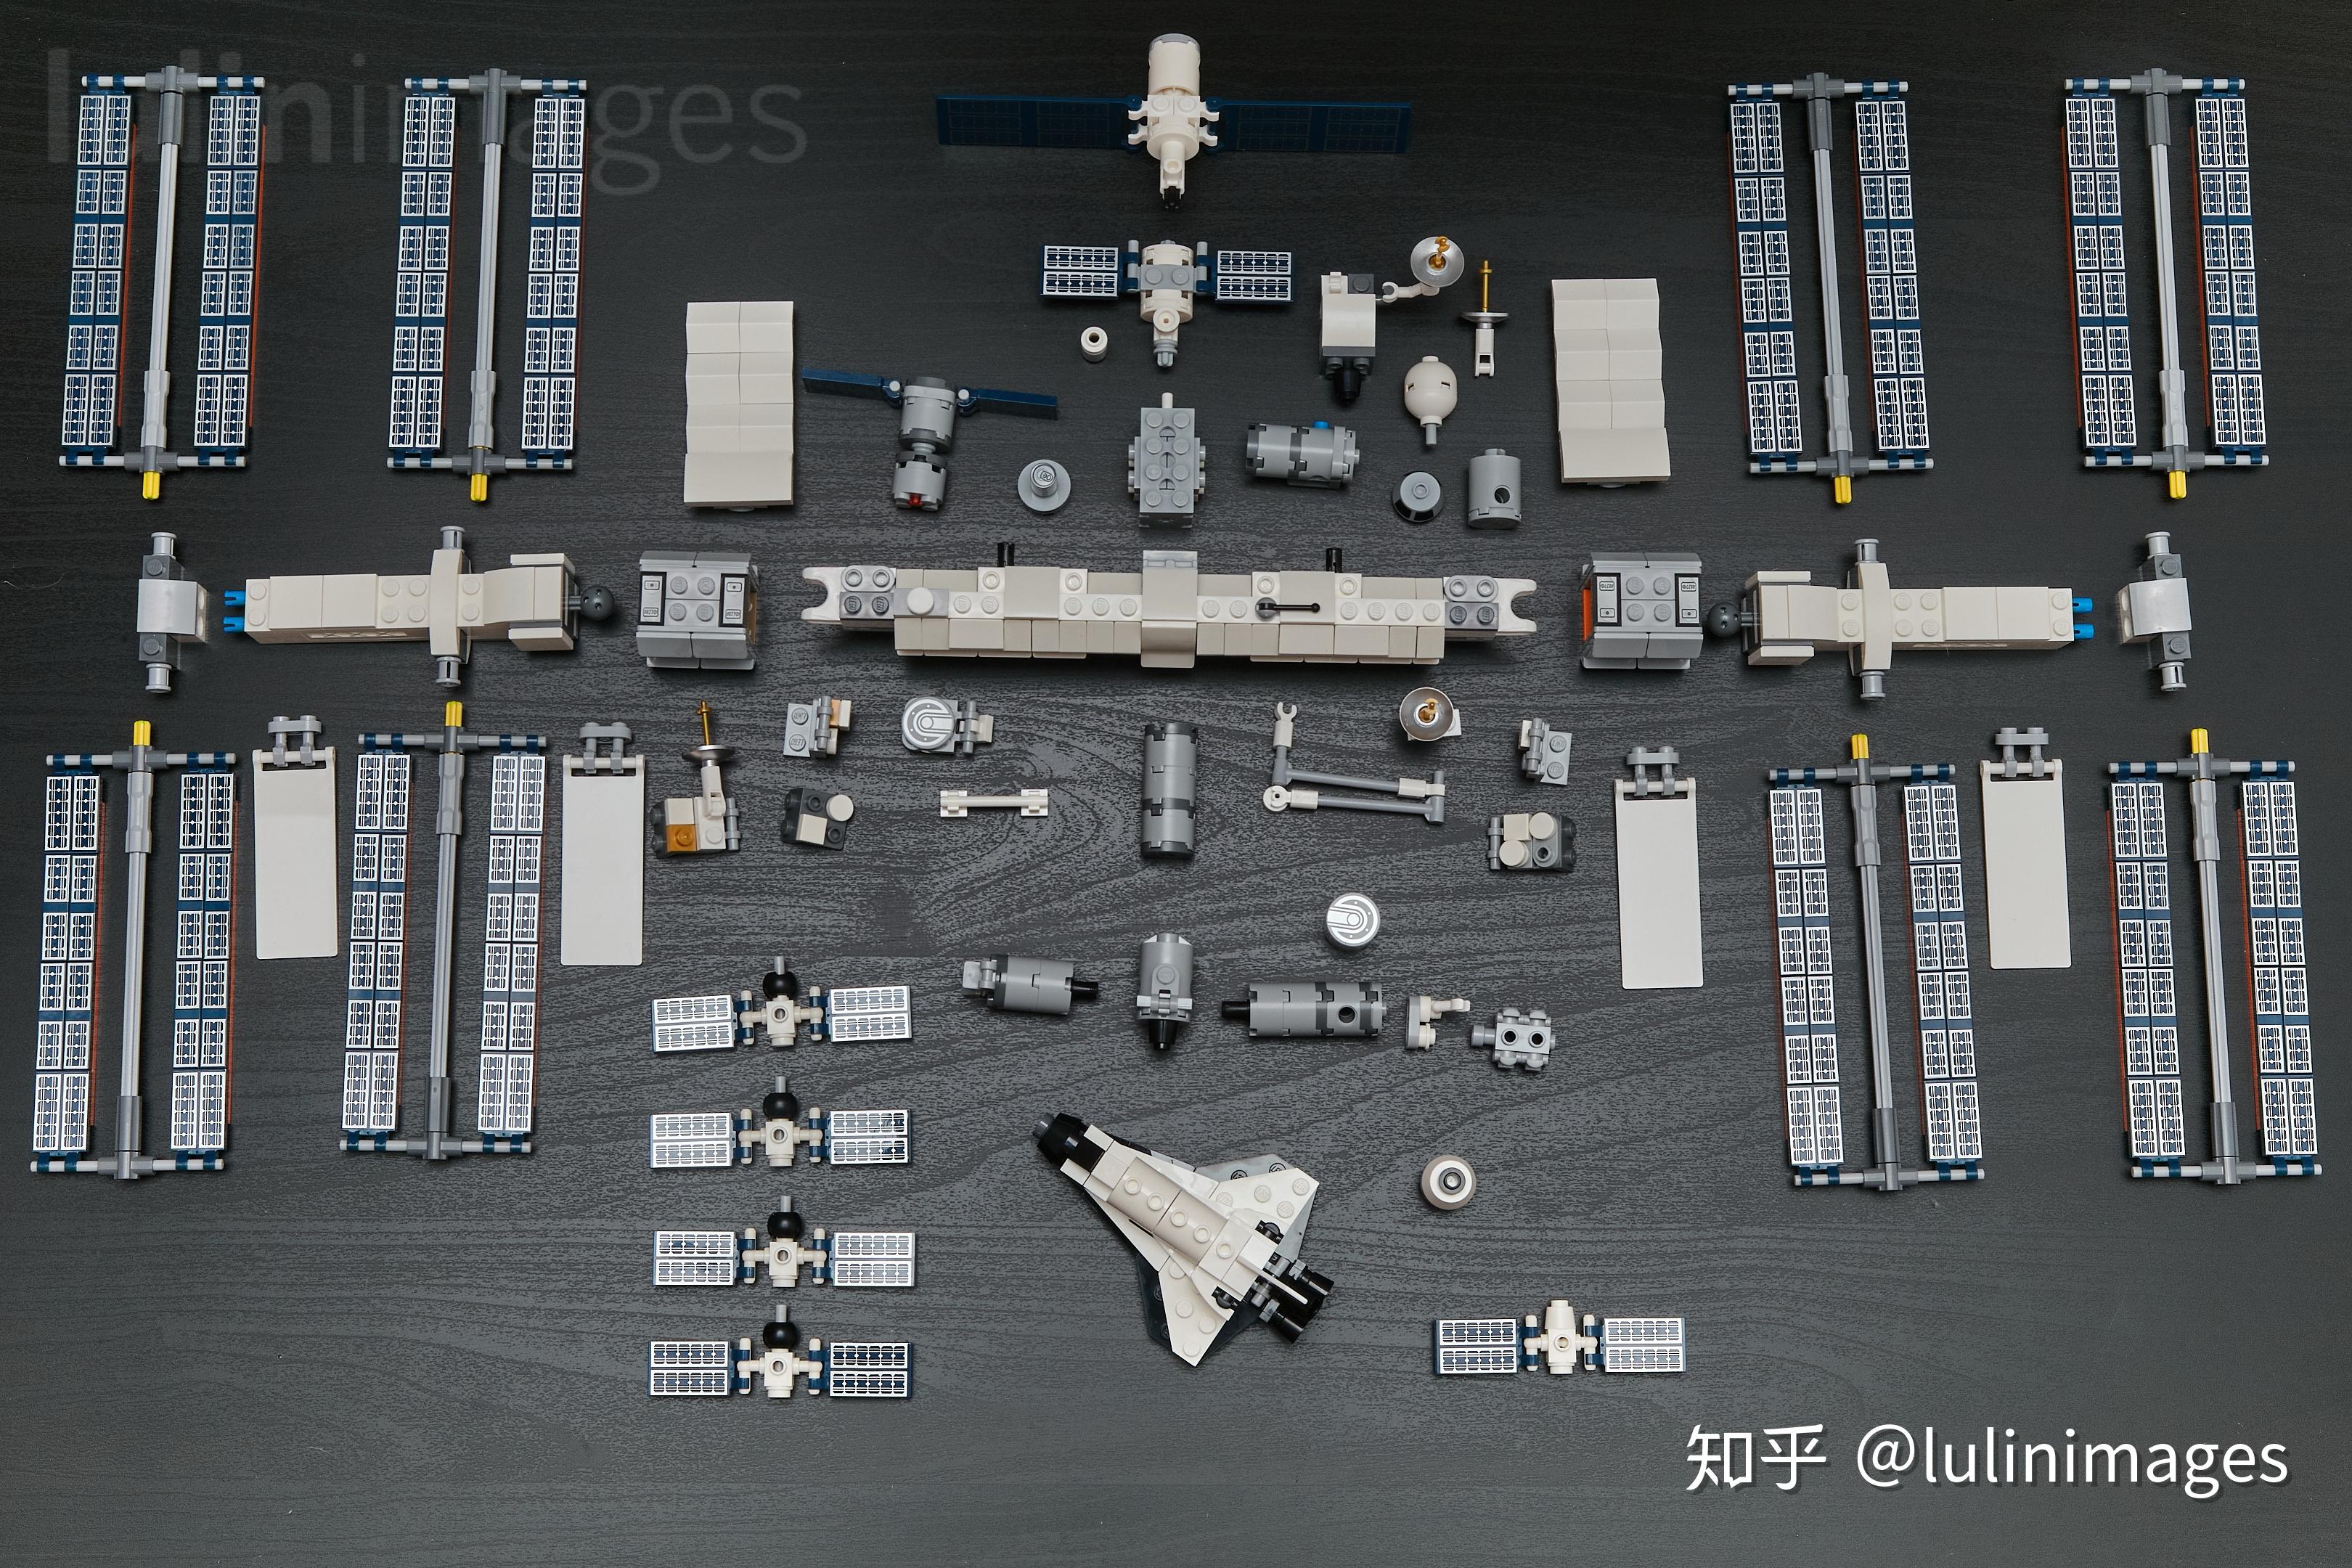 用乐高演示国际空间站建造过程是什么体验